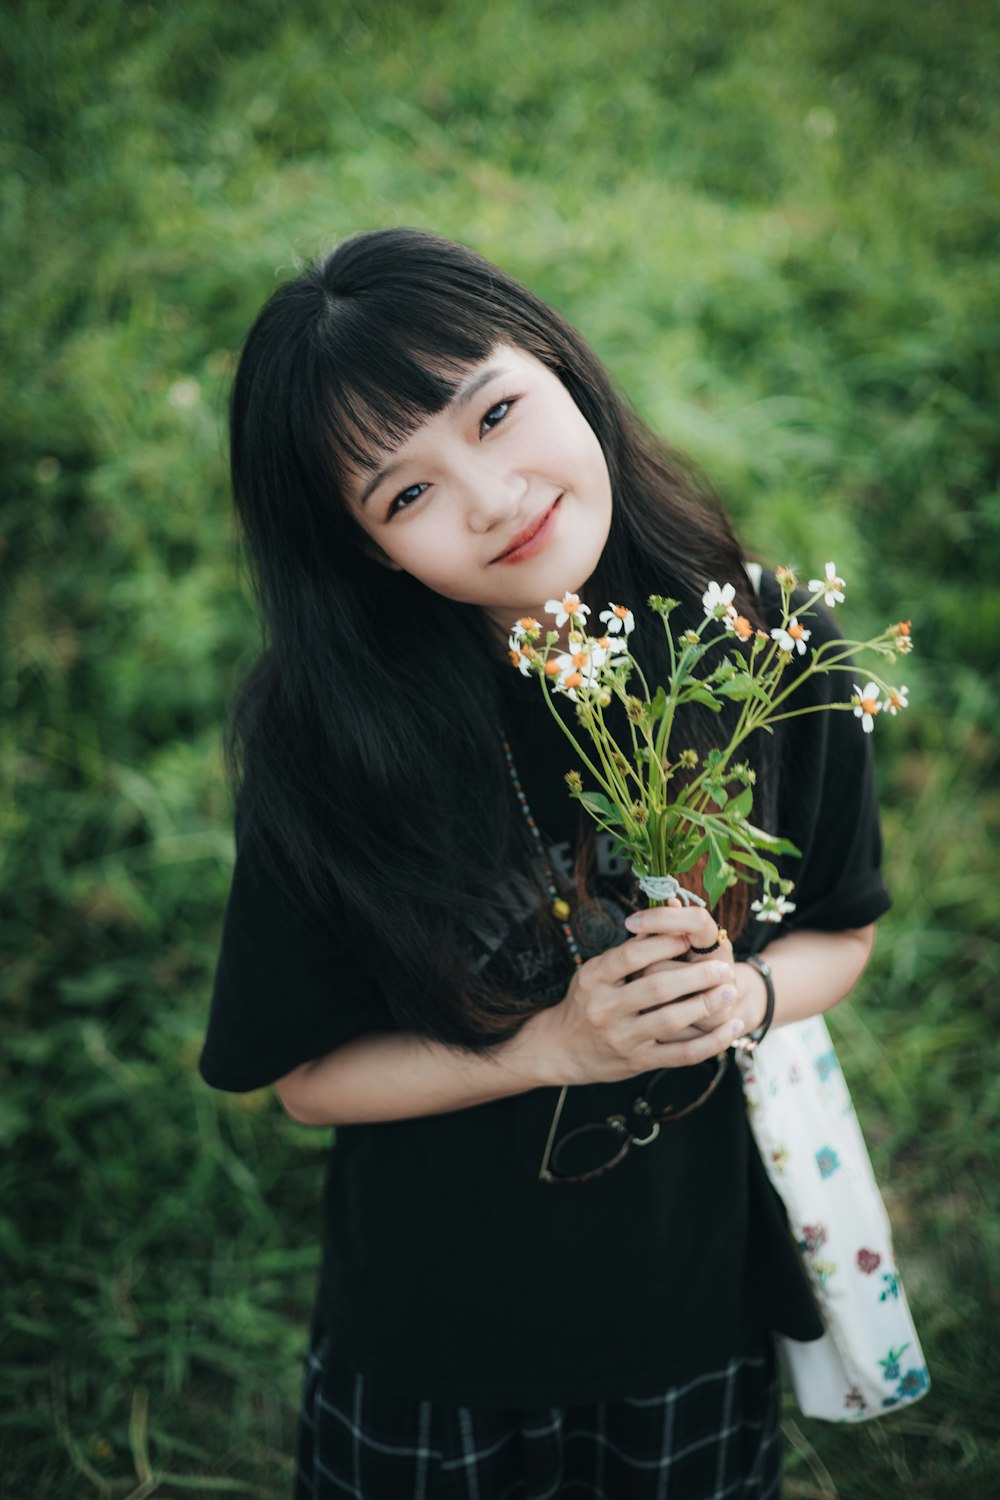 Ein junges Mädchen mit einem Blumenstrauß in der Hand